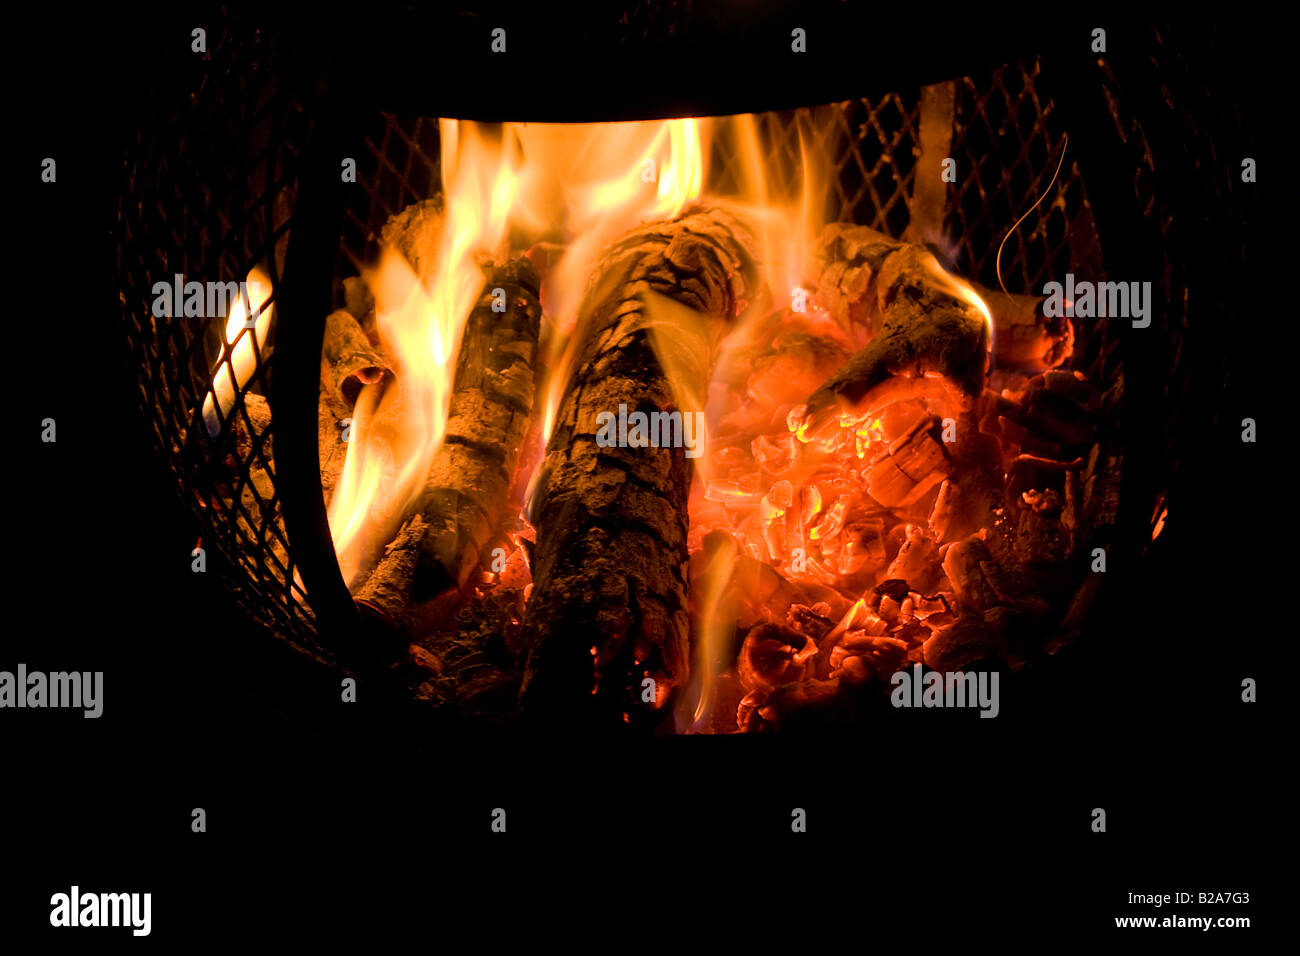 Eine glühende Feuer brennt in einem Hinterhof Chiminea mit rot glühenden Kohlen Stockfoto